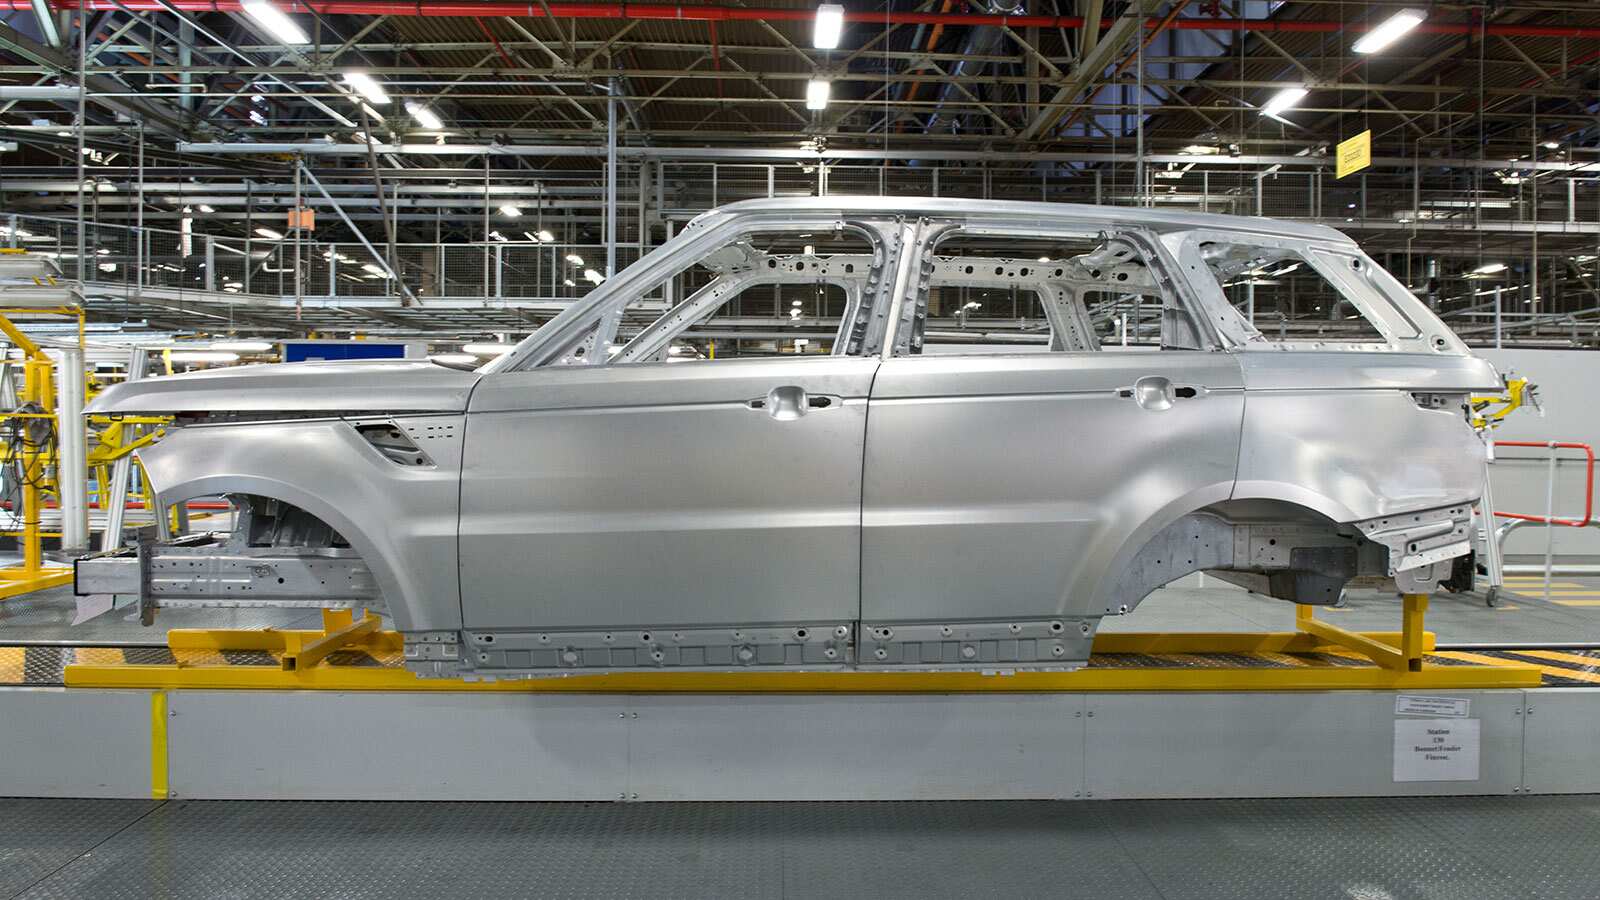 Range Rover Aluminum Frame in Factory.